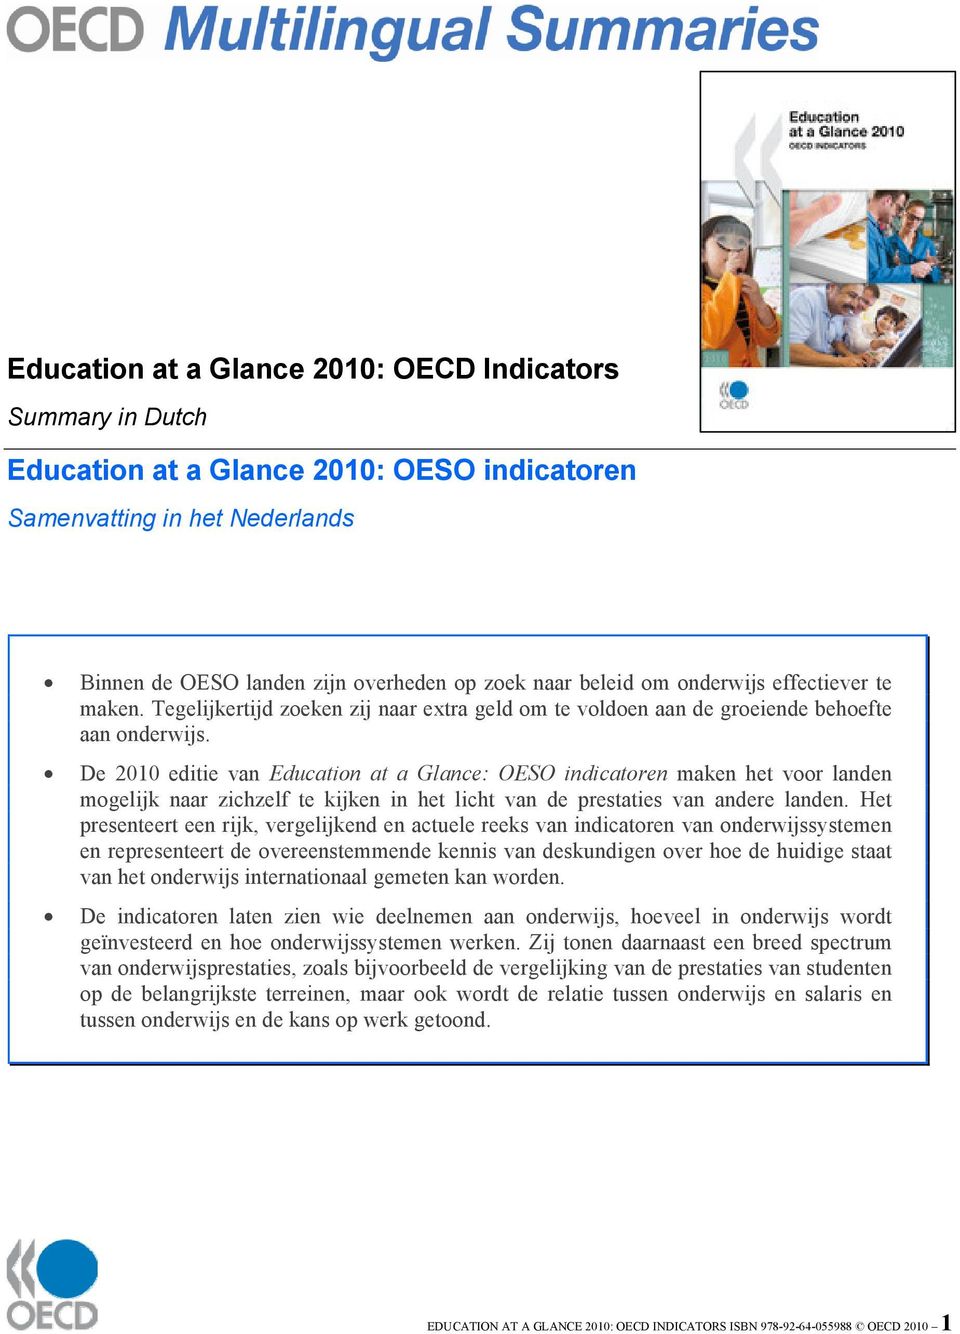 De 2010 editie van Education at a Glance: OESO indicatoren maken het voor landen mogelijk naar zichzelf te kijken in het licht van de prestaties van andere landen.